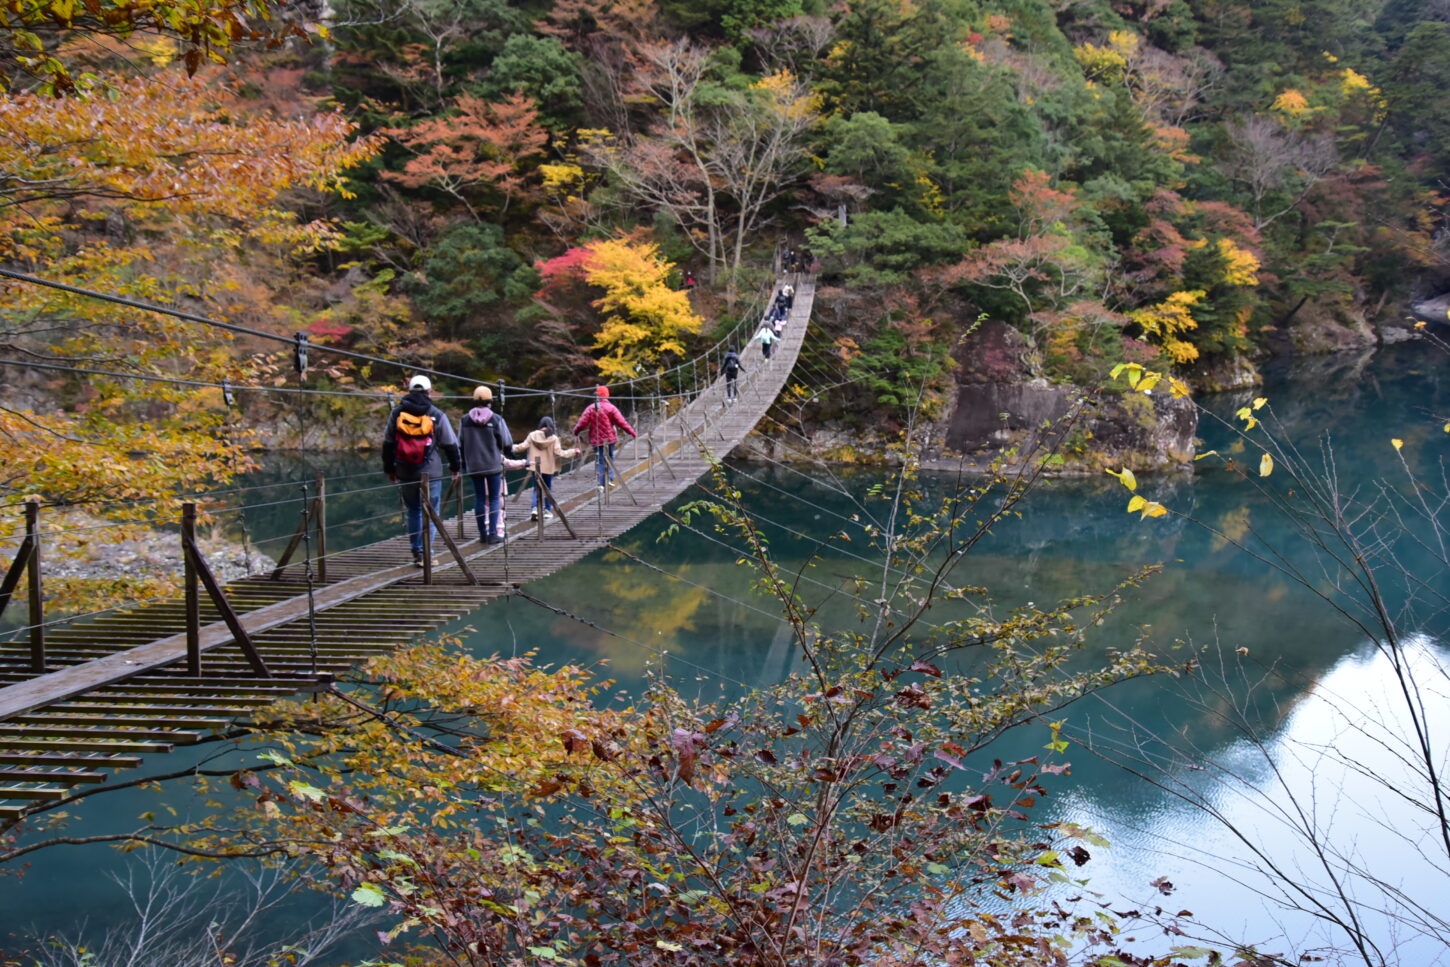 死ぬまでに渡りたい 夢のつり橋 で有名な寸又峡の紅葉狩りをレポート 静岡県観光公式ブログ